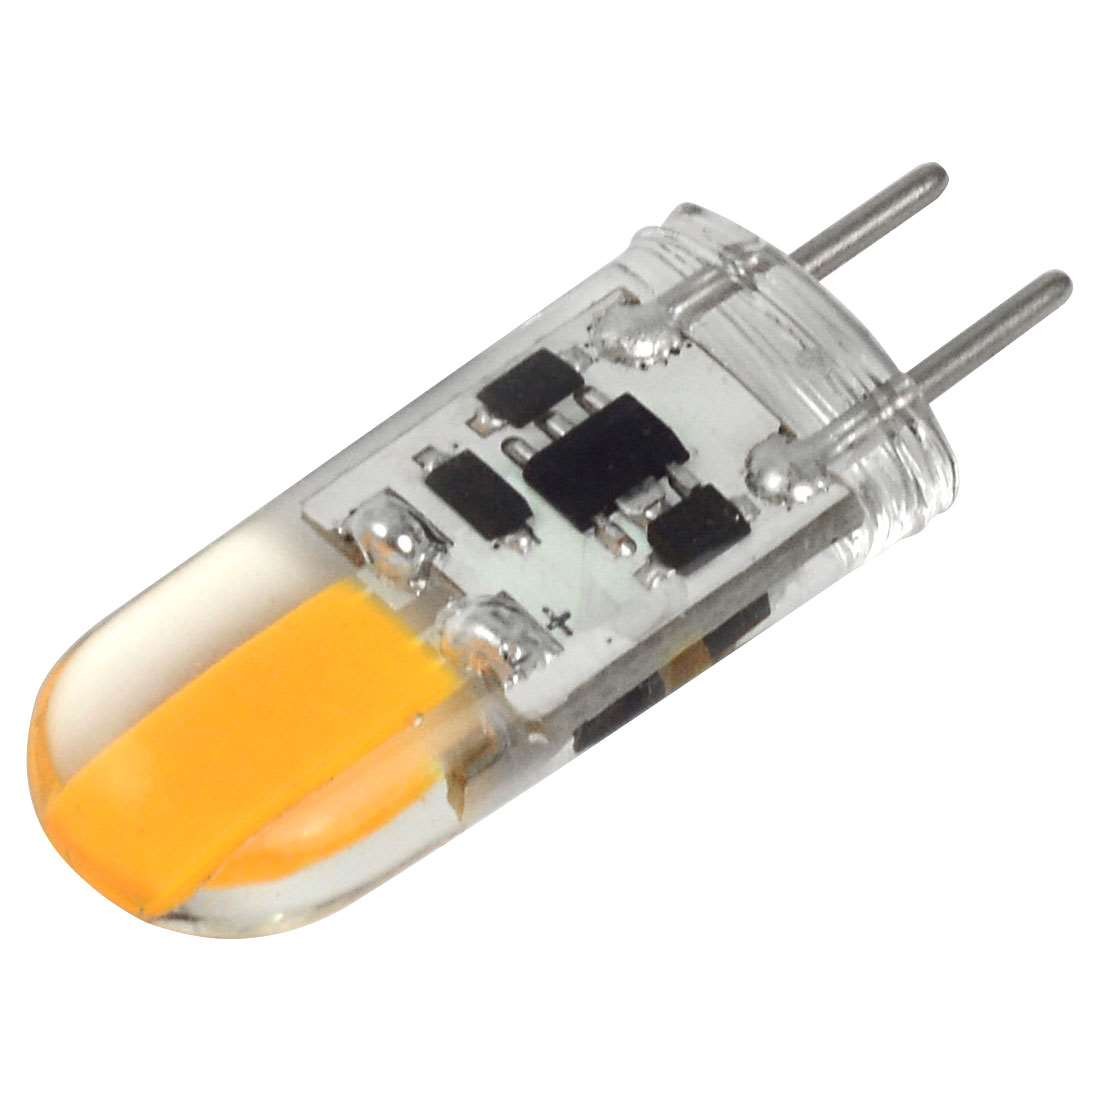 Mengsled Mengs® Gy635 3w Led Light Cob Led Bulb Lamp Acdc 12v In